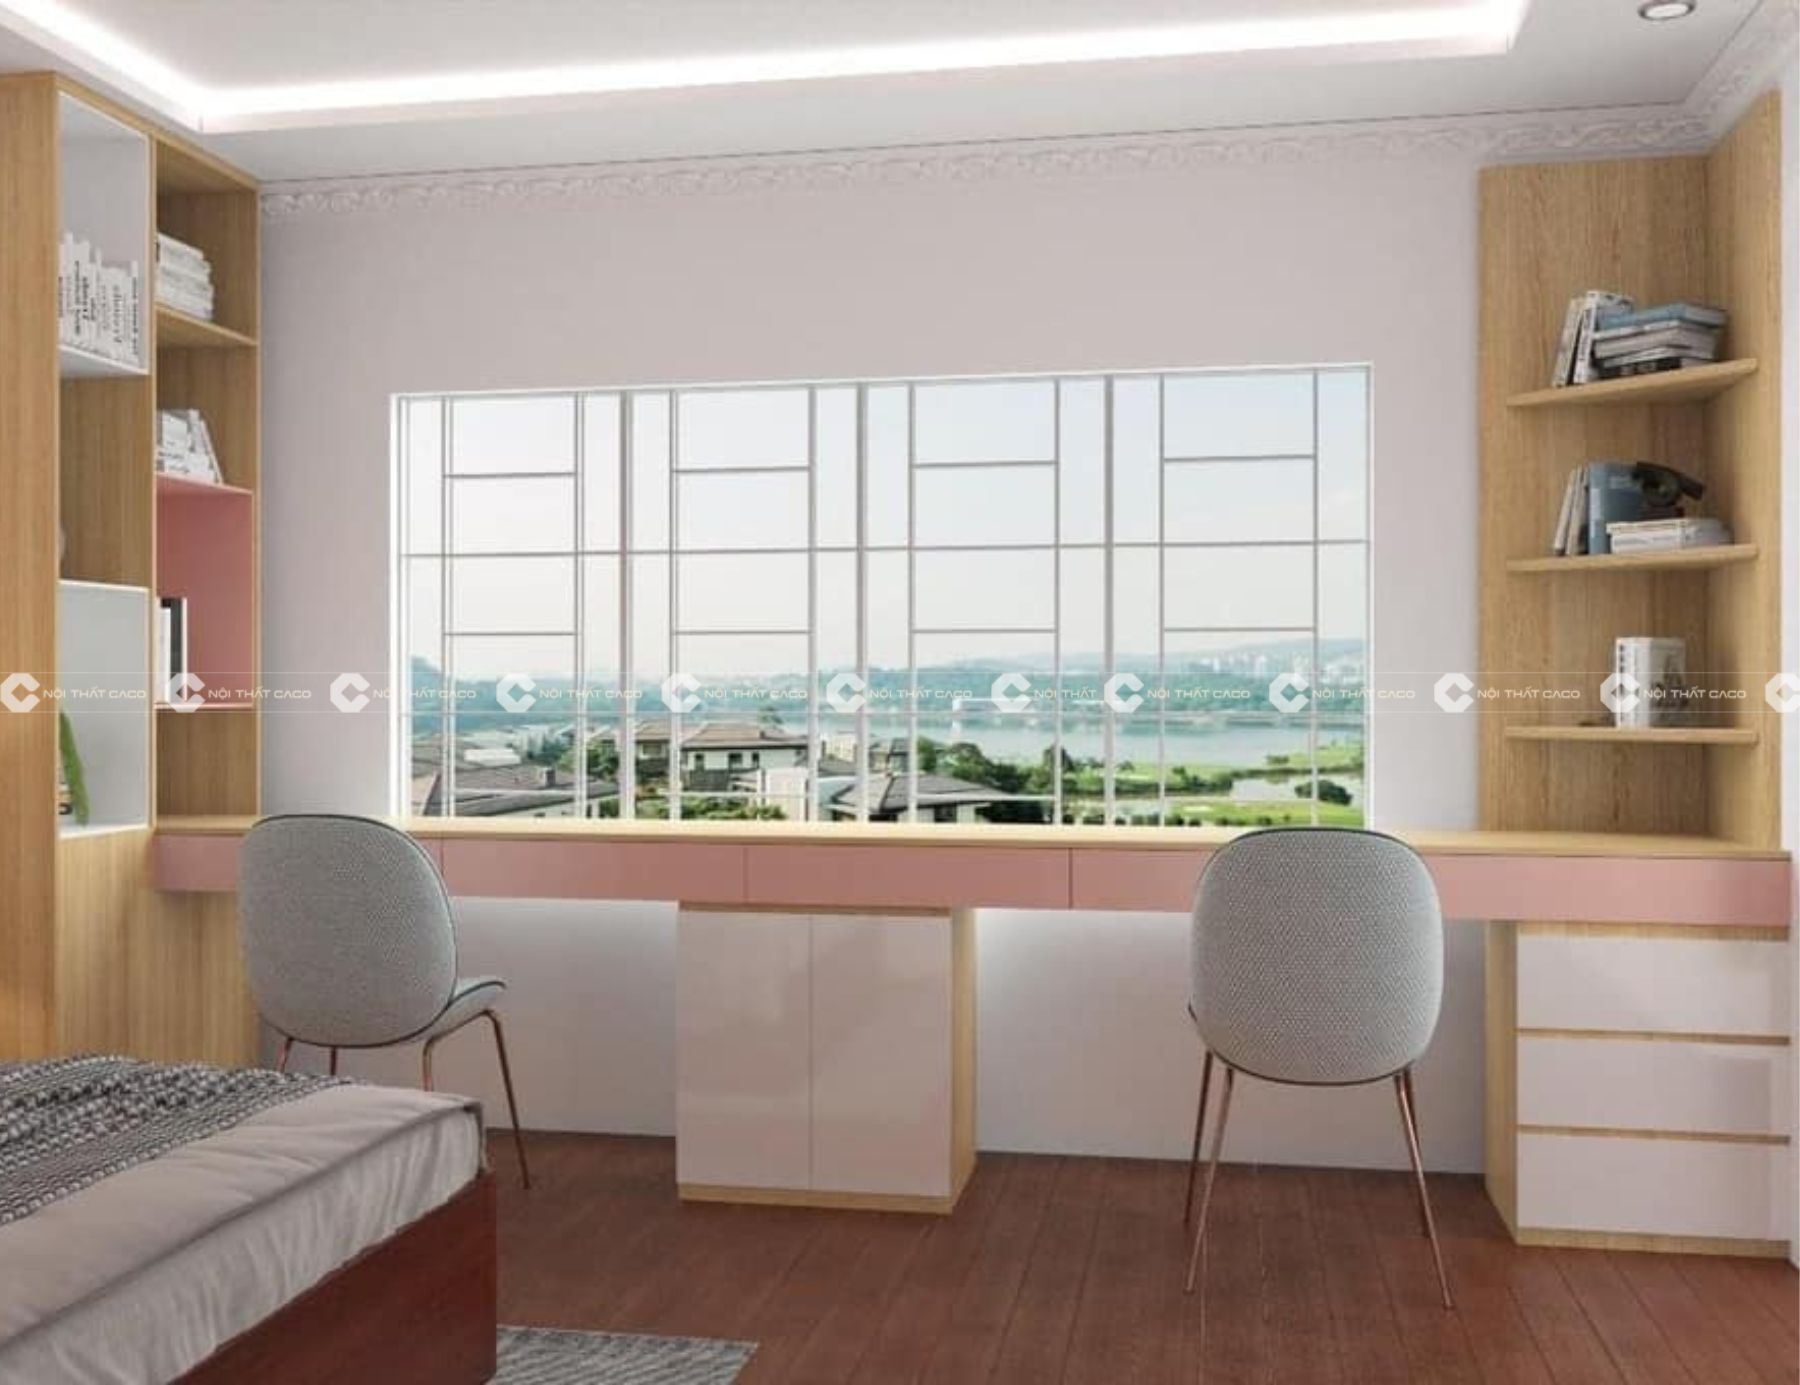 Thiết kế thi công nội thất phòng ngủ đẹp theo phong cách hiện đại tại Quận 7 4